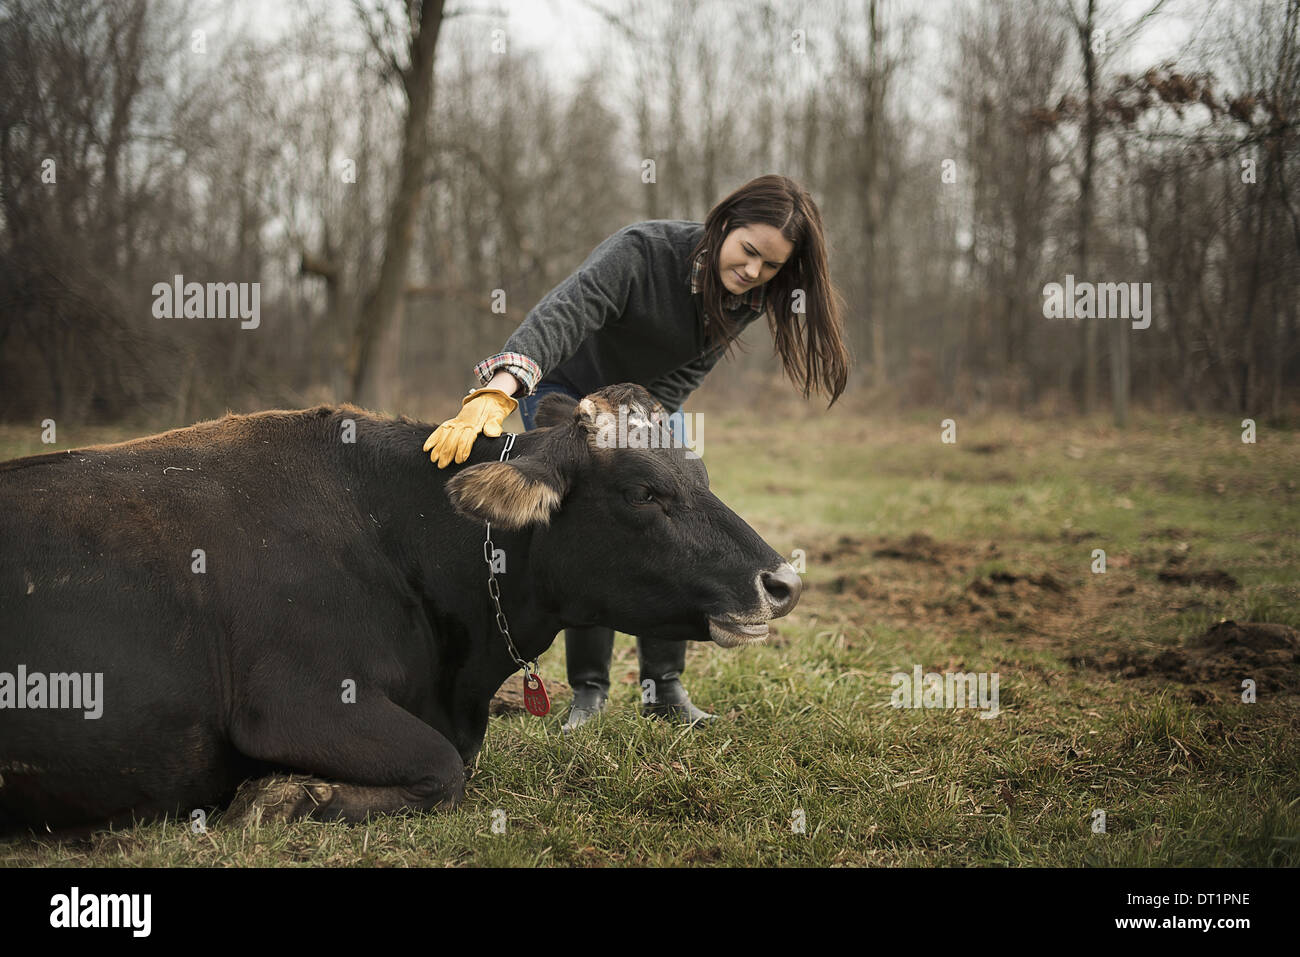 Granja lechera agricultor trabajando y cuidando a los animales Foto de stock